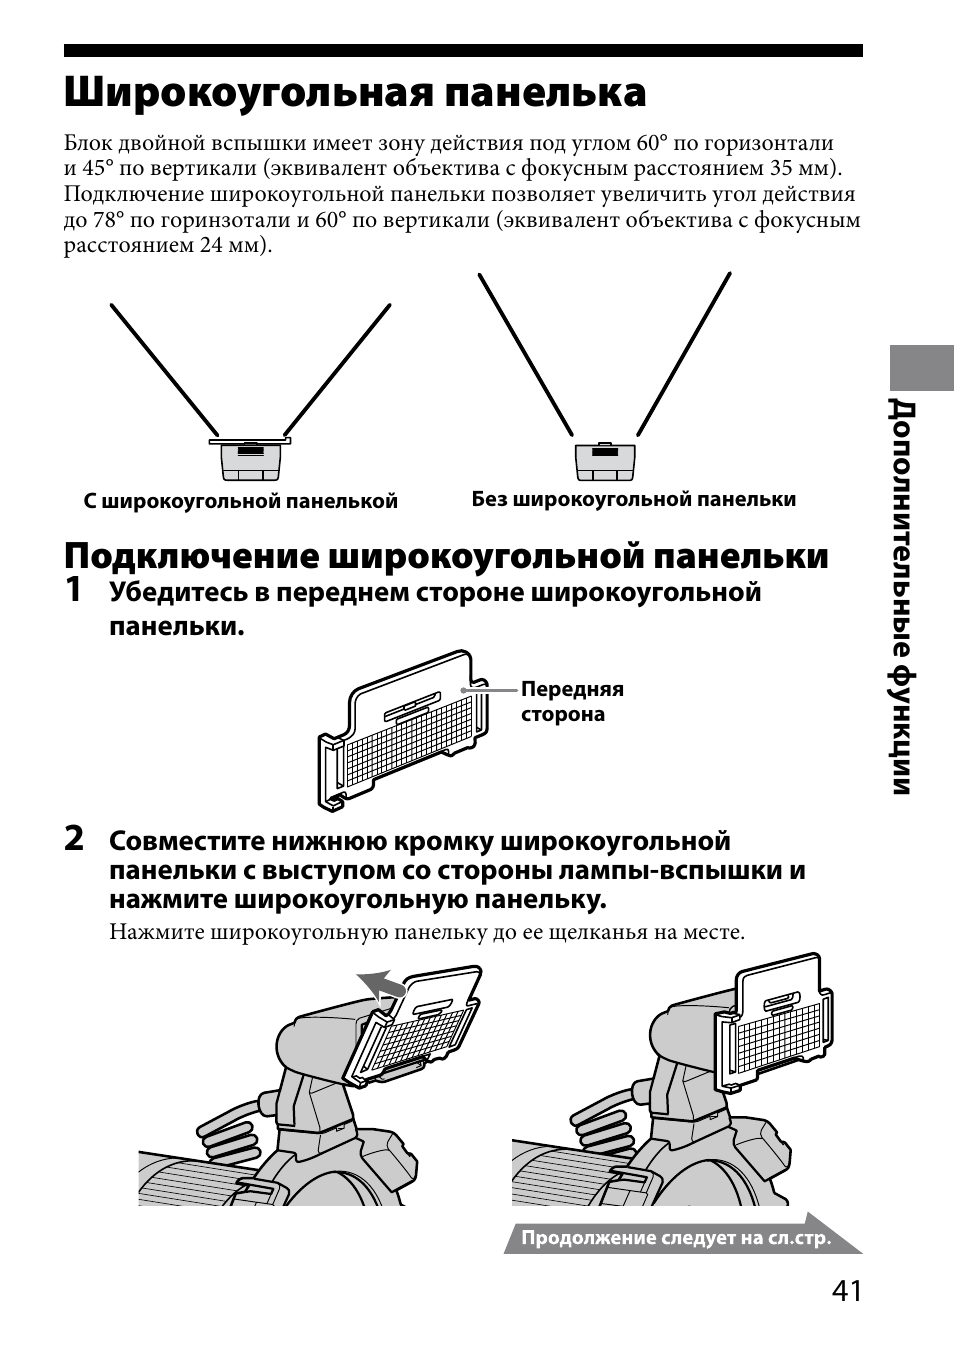 Широкоугольная панелька, Подключение широкоугольной панельки 1 | Sony HVL-MT24AM User Manual | Page 275 / 295